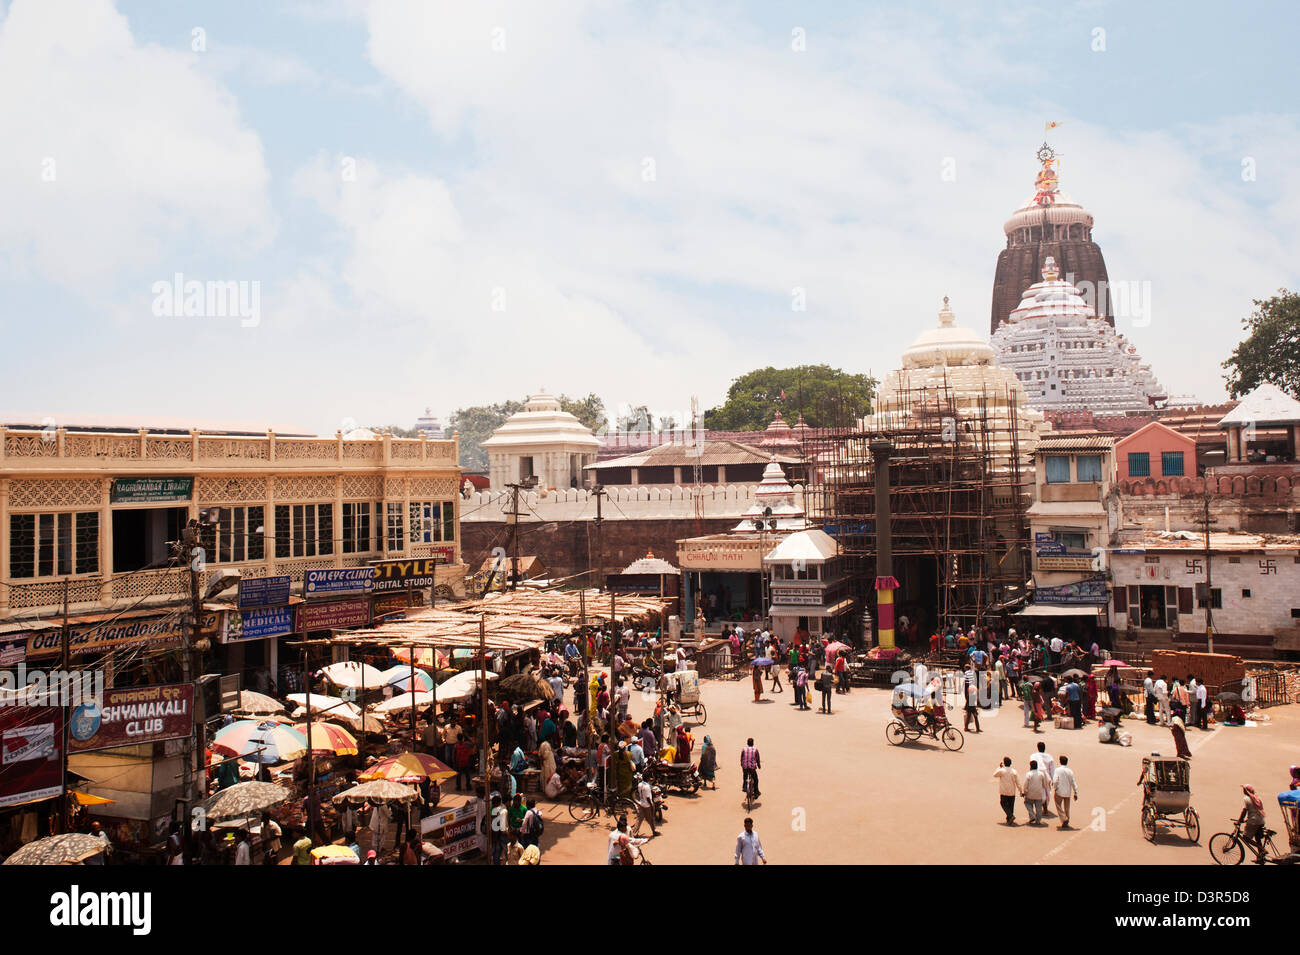 Street scene outside a temple, Jagannath Temple, Puri, Orissa, India Stock Photo